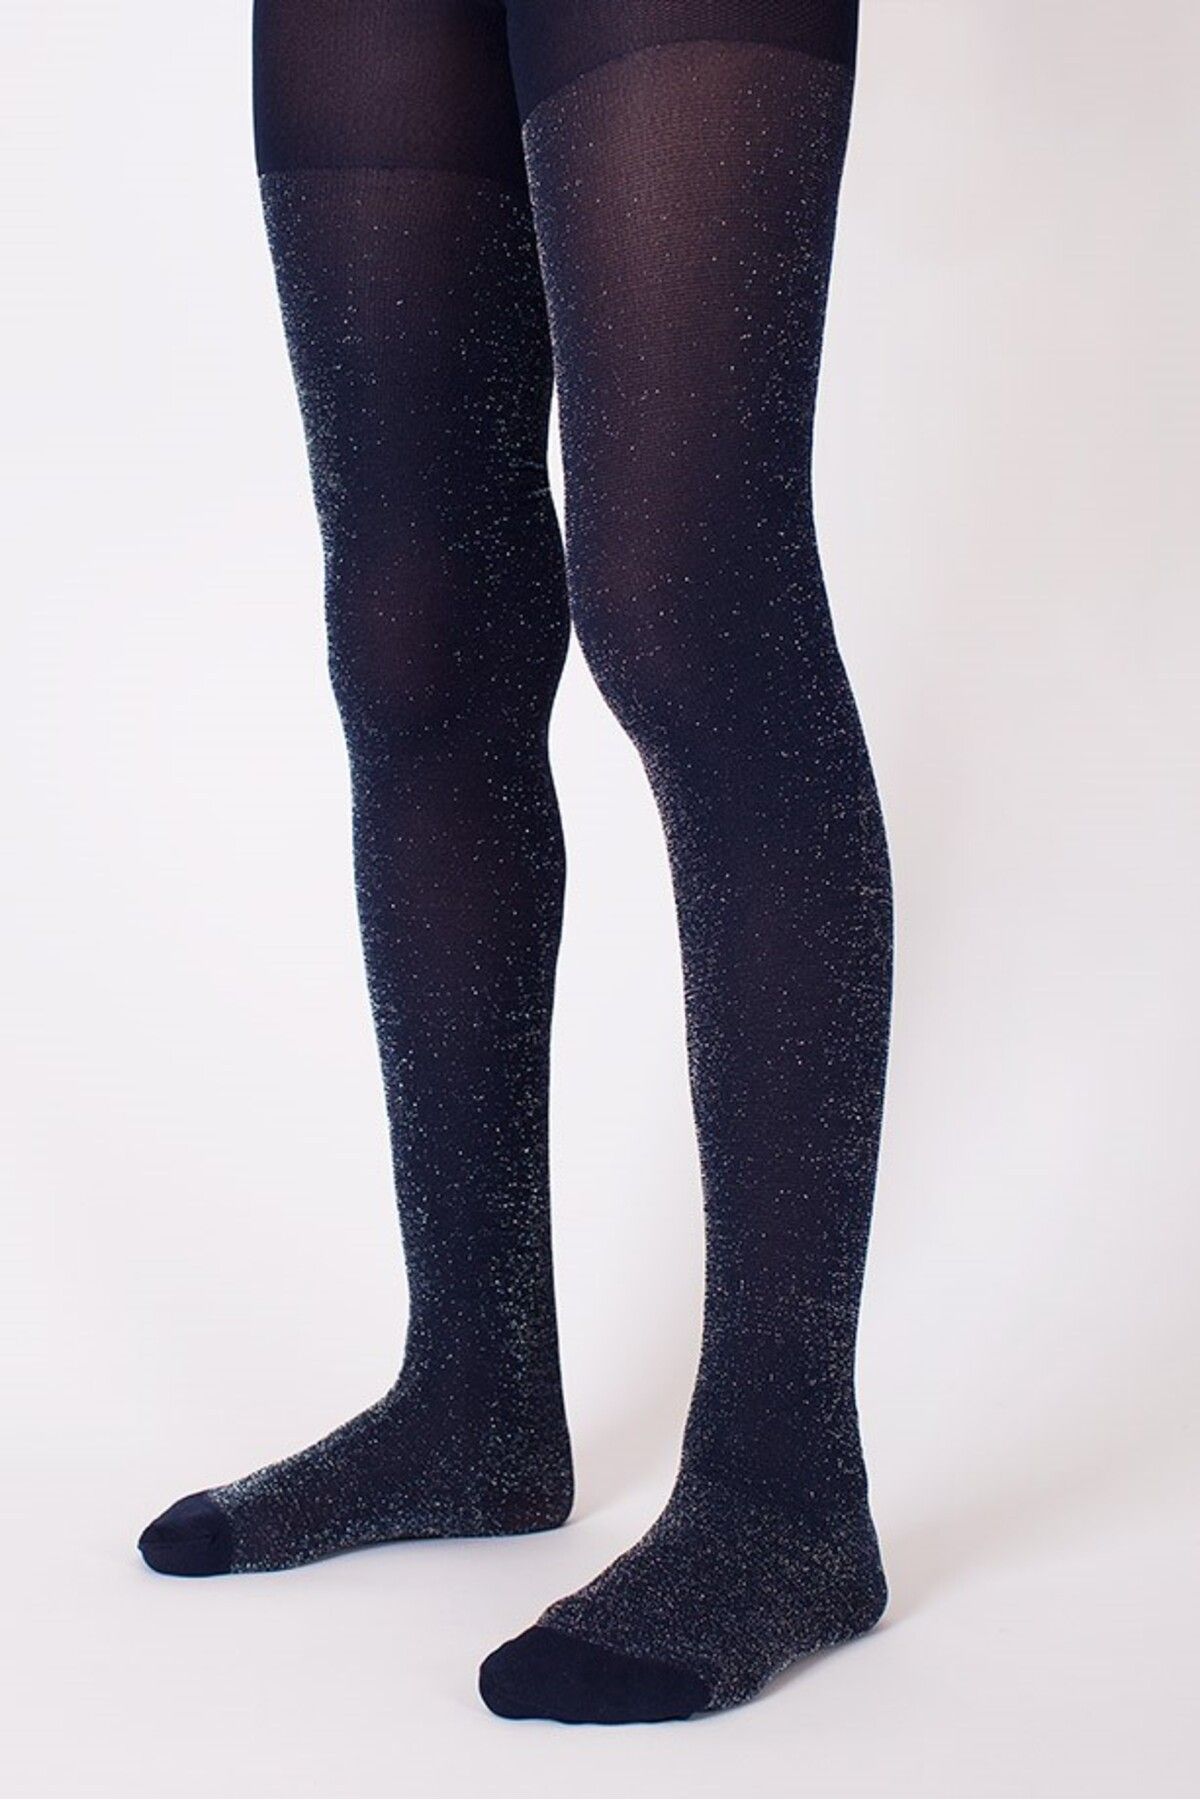 Goose Simli Işıltılı Lacivert Kız Çocuk Külotlu Çorap